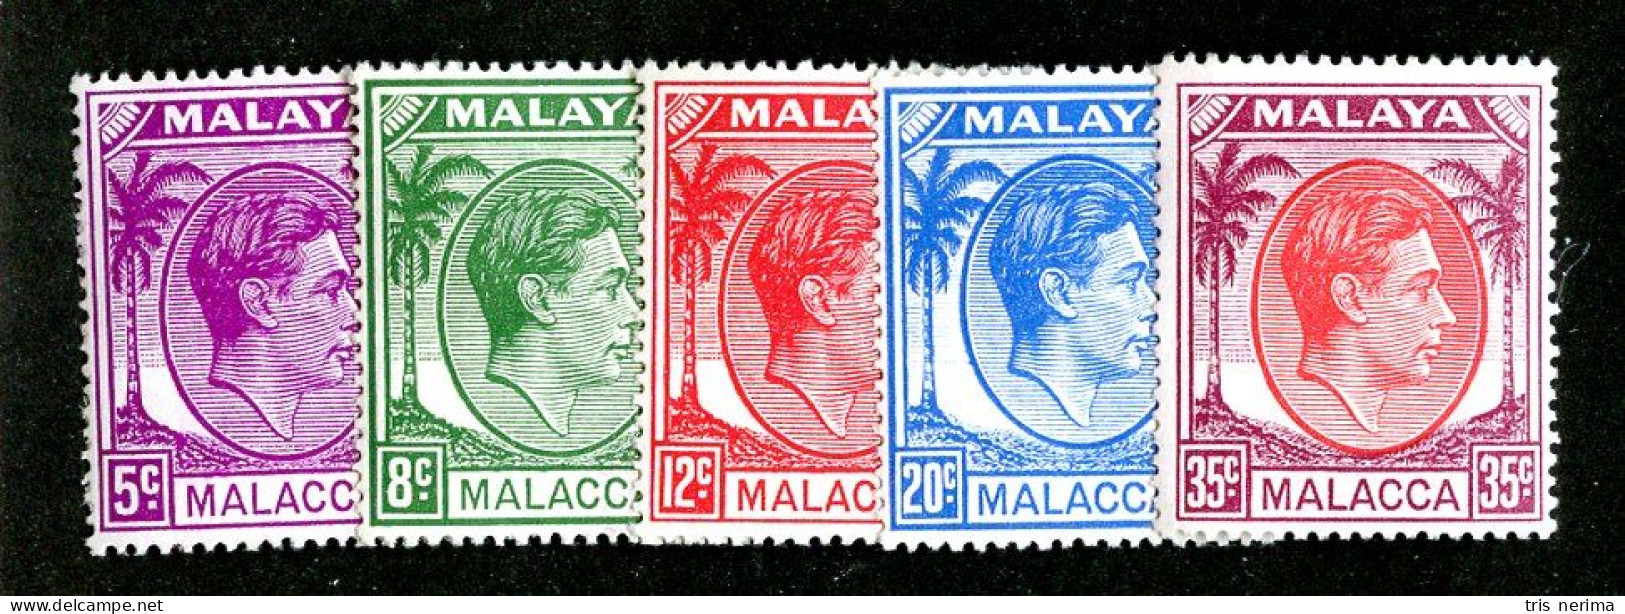 8011 BCXX 1952 Malaysia Scott # 22-26 MNH** (offers Welcome) - Malacca